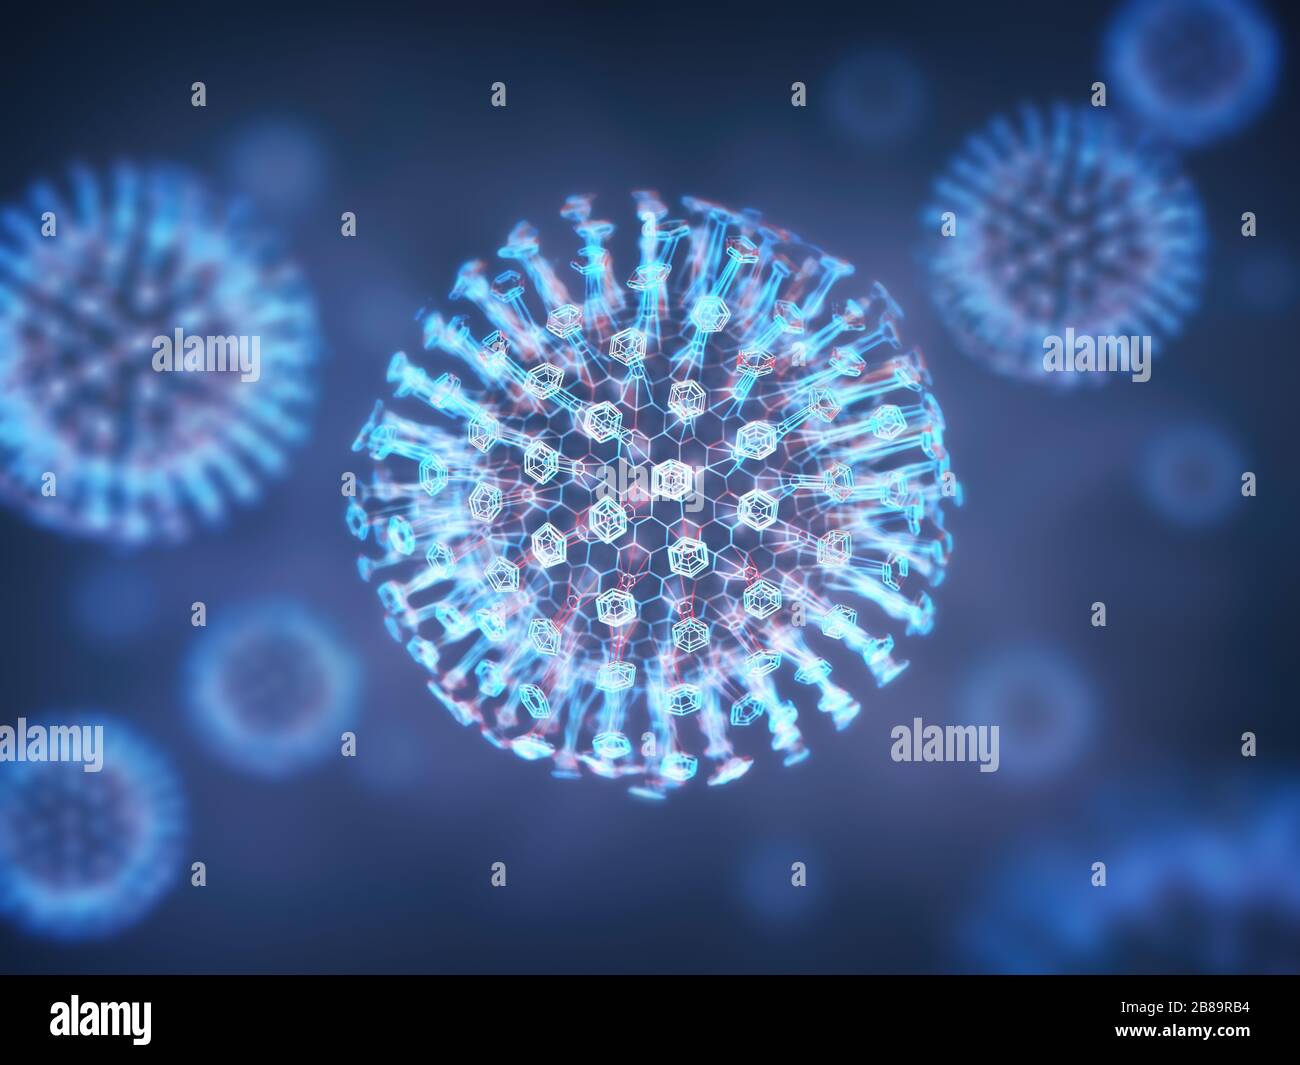 Virus, illustration Stock Photo